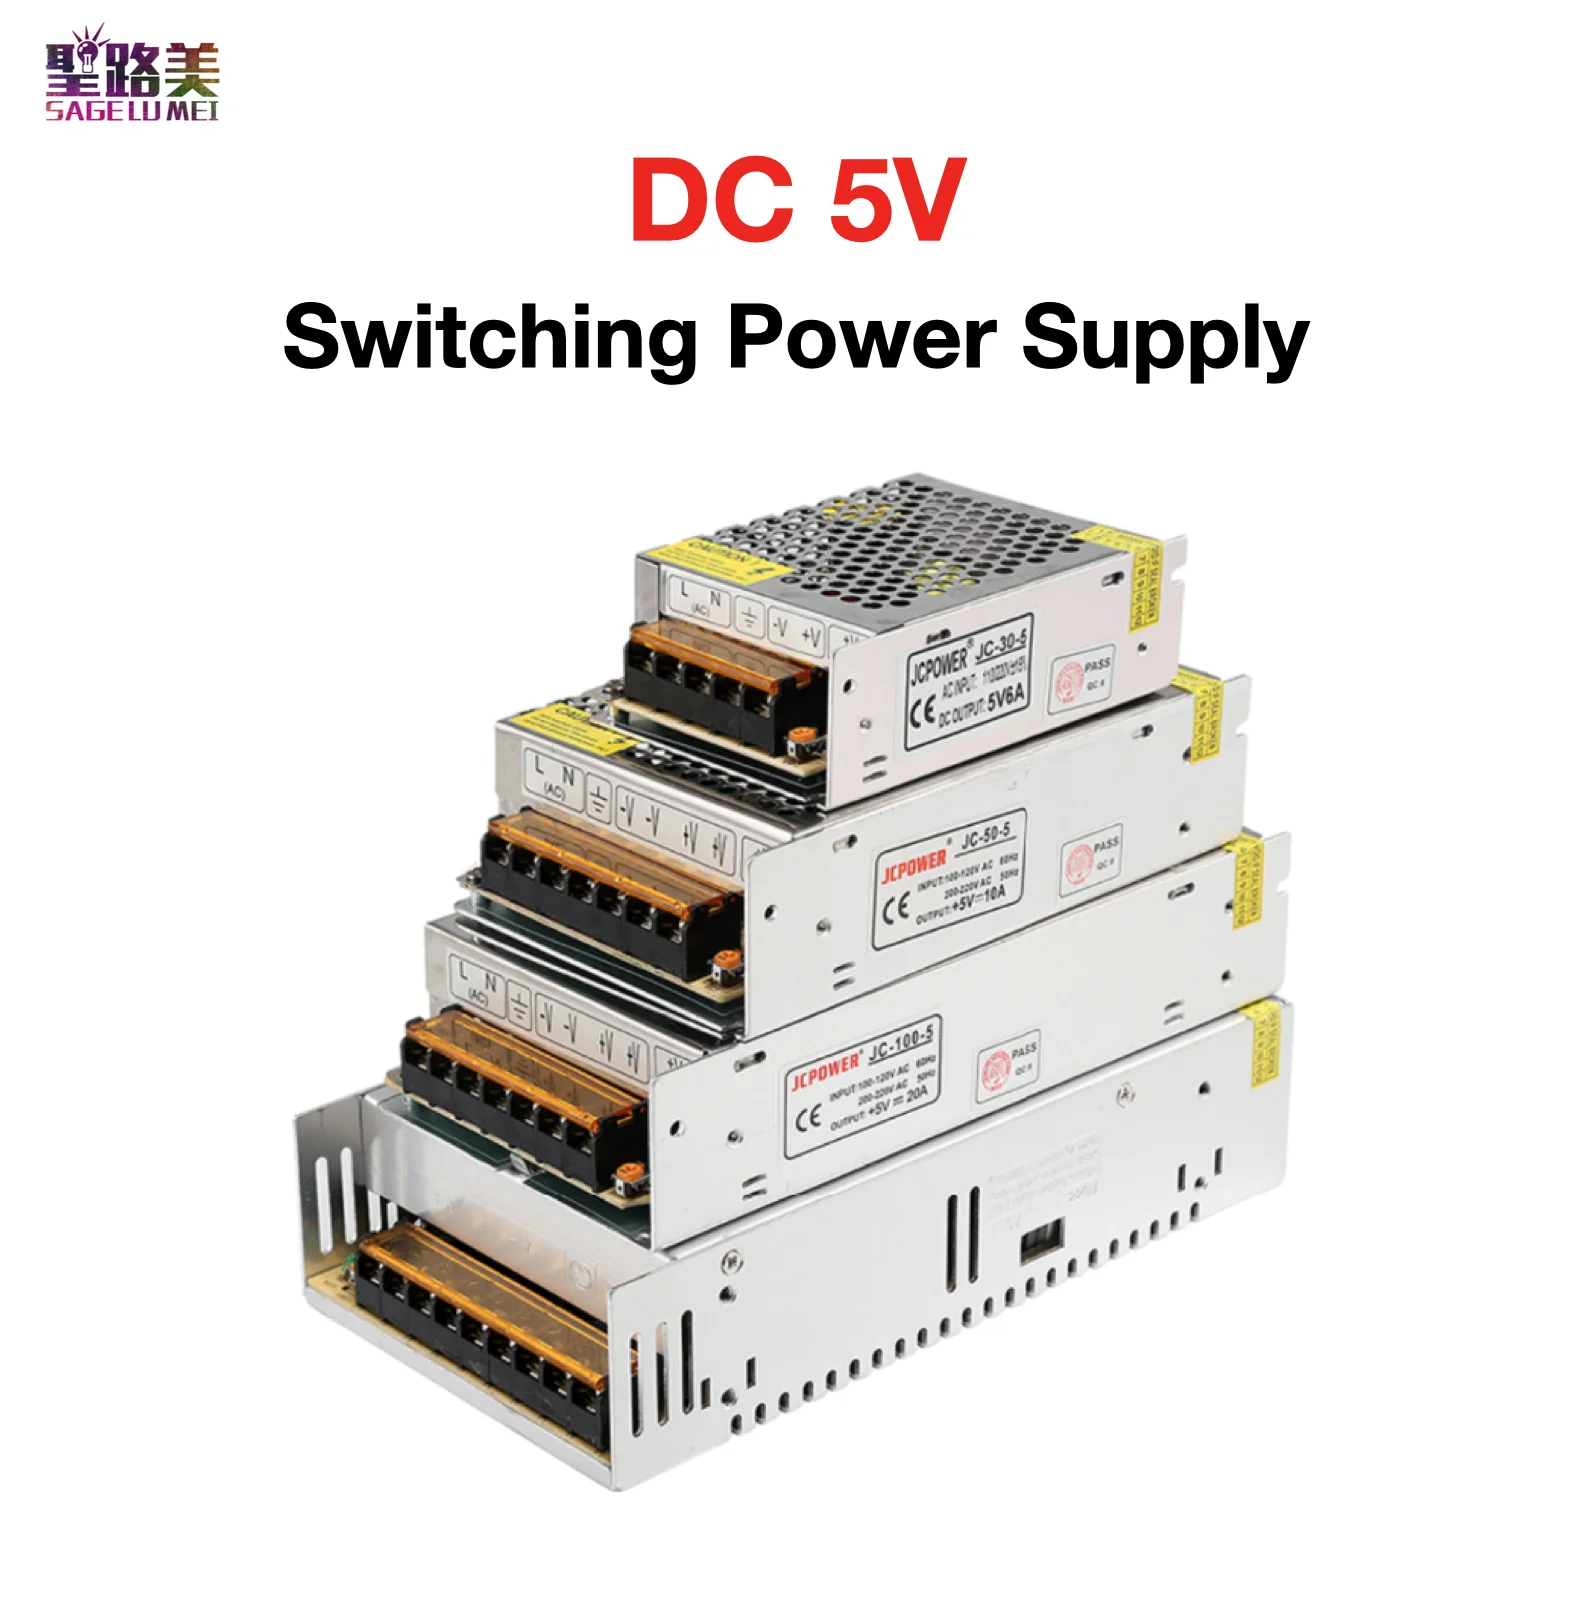 

DC5V 2A/3A/4A/5A/6A/8A/10A/12A/20A/30A/40A/60A Switching Power Supply Lighting Transformer for LED Strip / LED lamp / CCTV